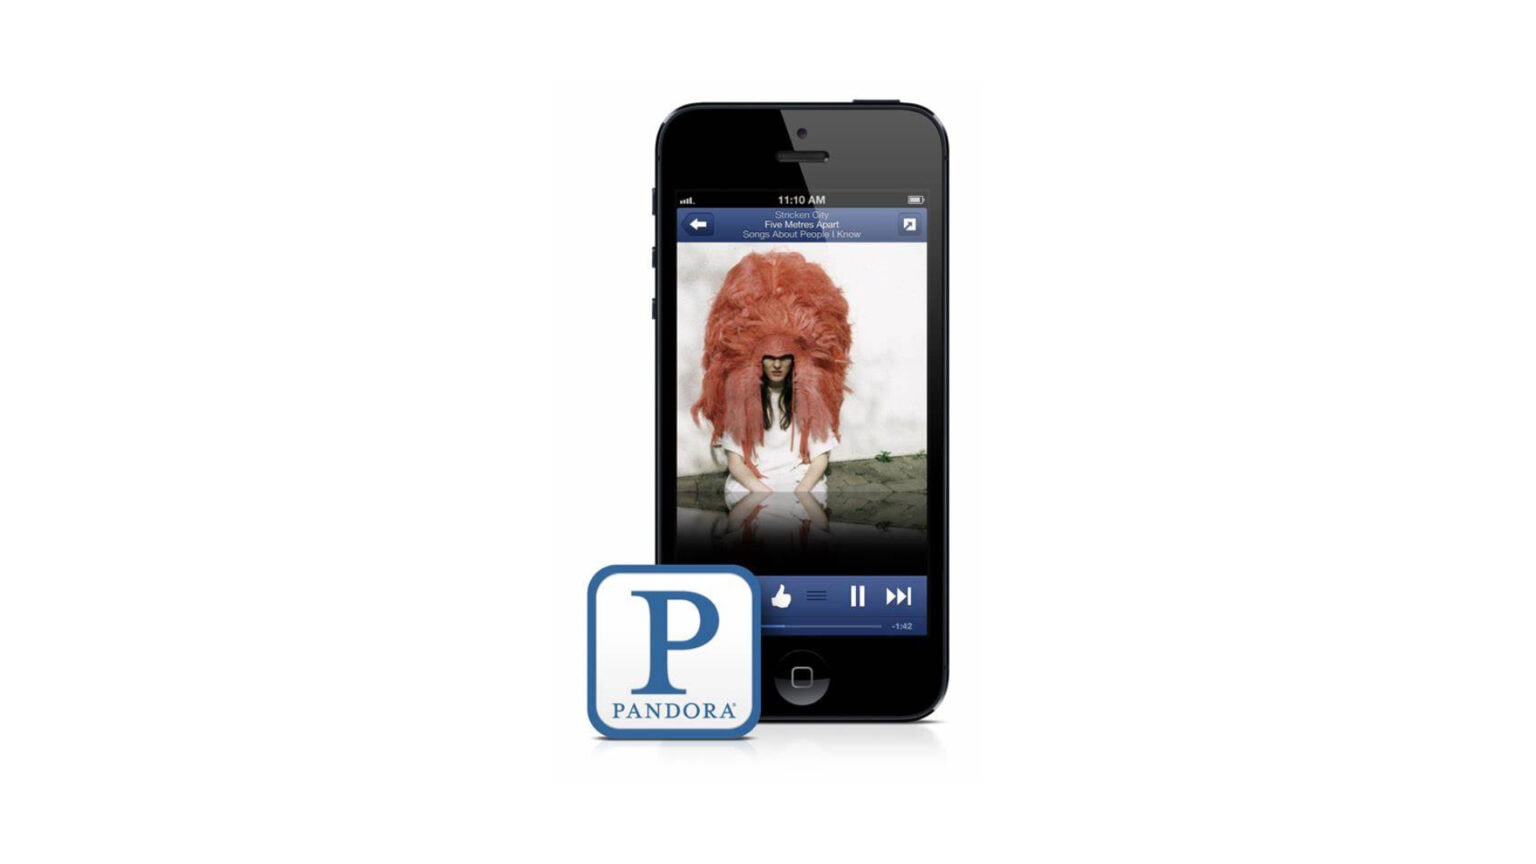 Scott Forstall told Pandora to jailbreak iPhone